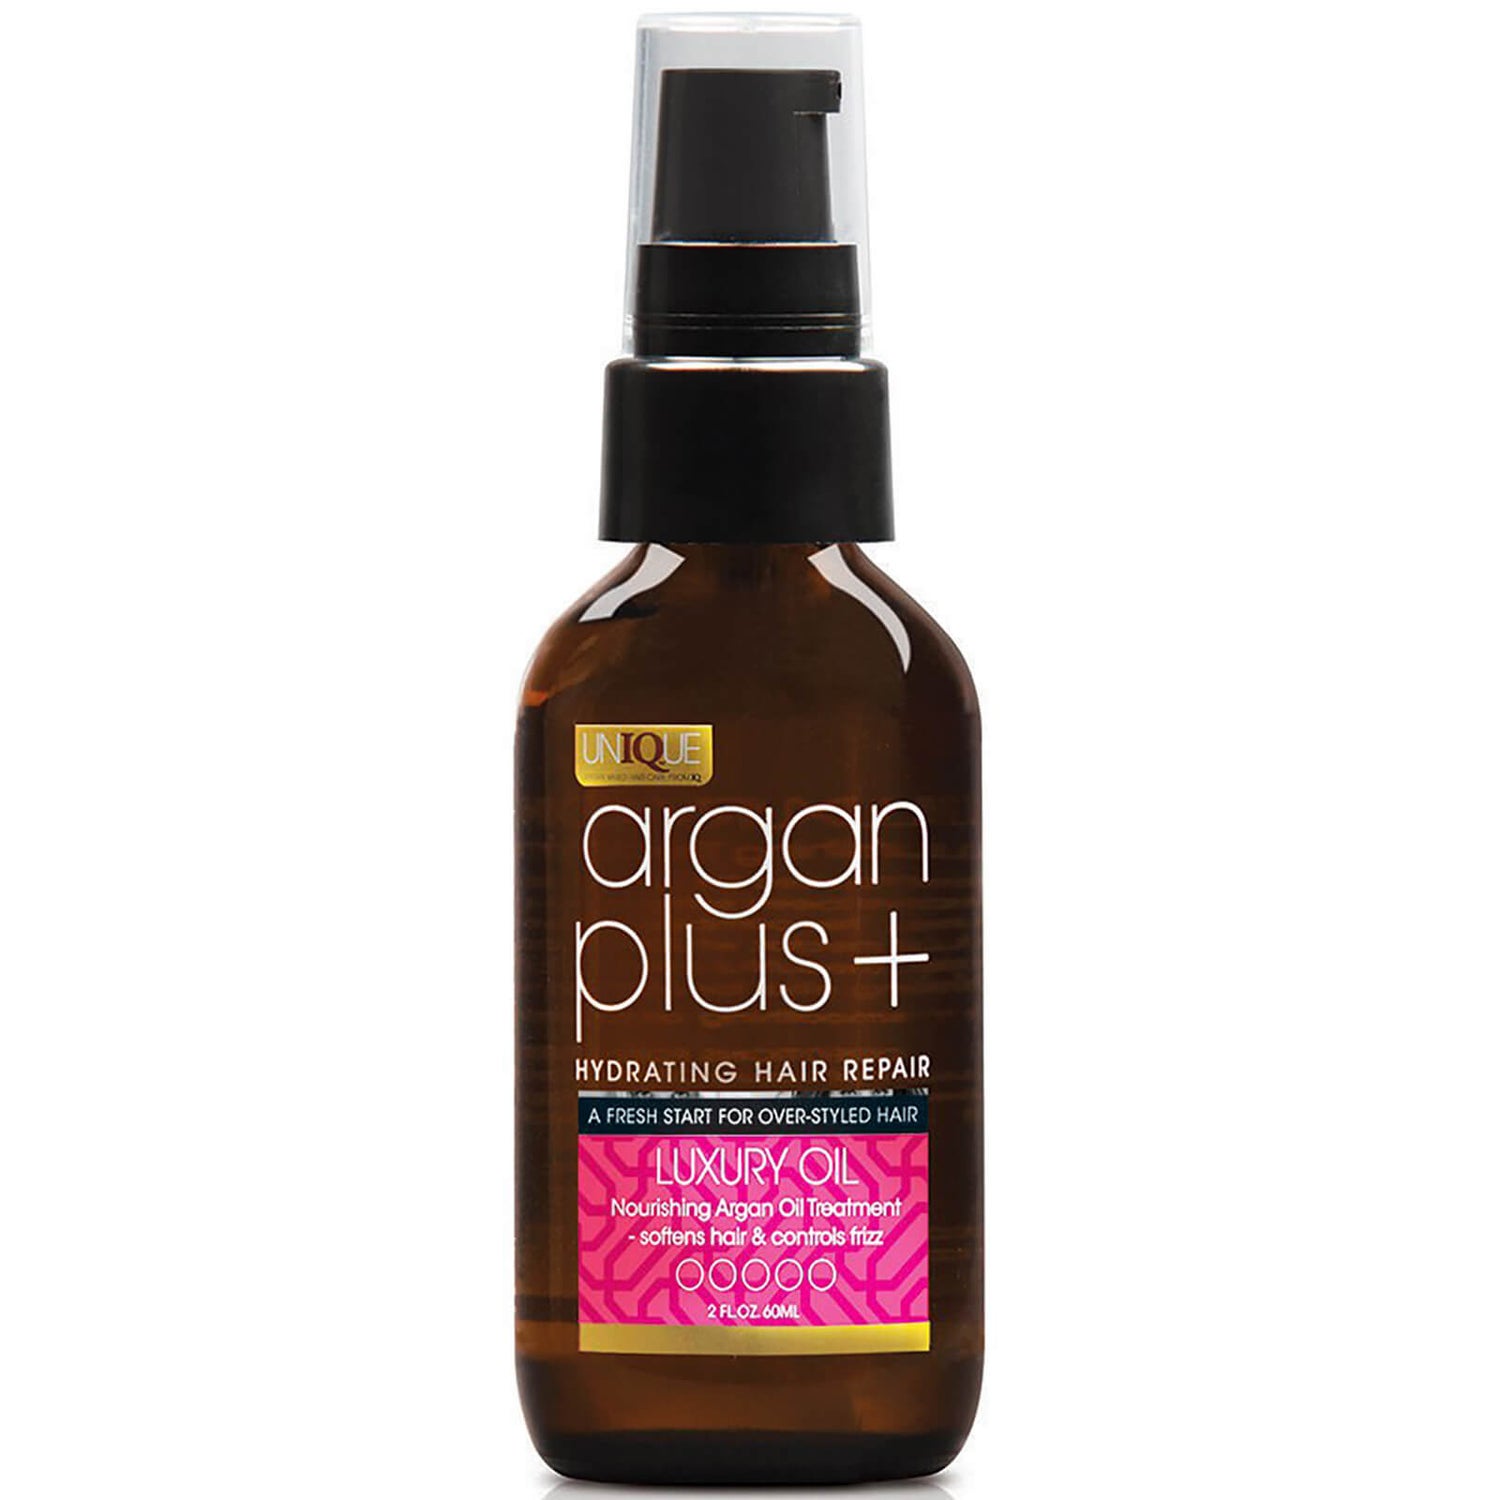 Argan Plus+ Luxus Haarpflege-Öl 60ml